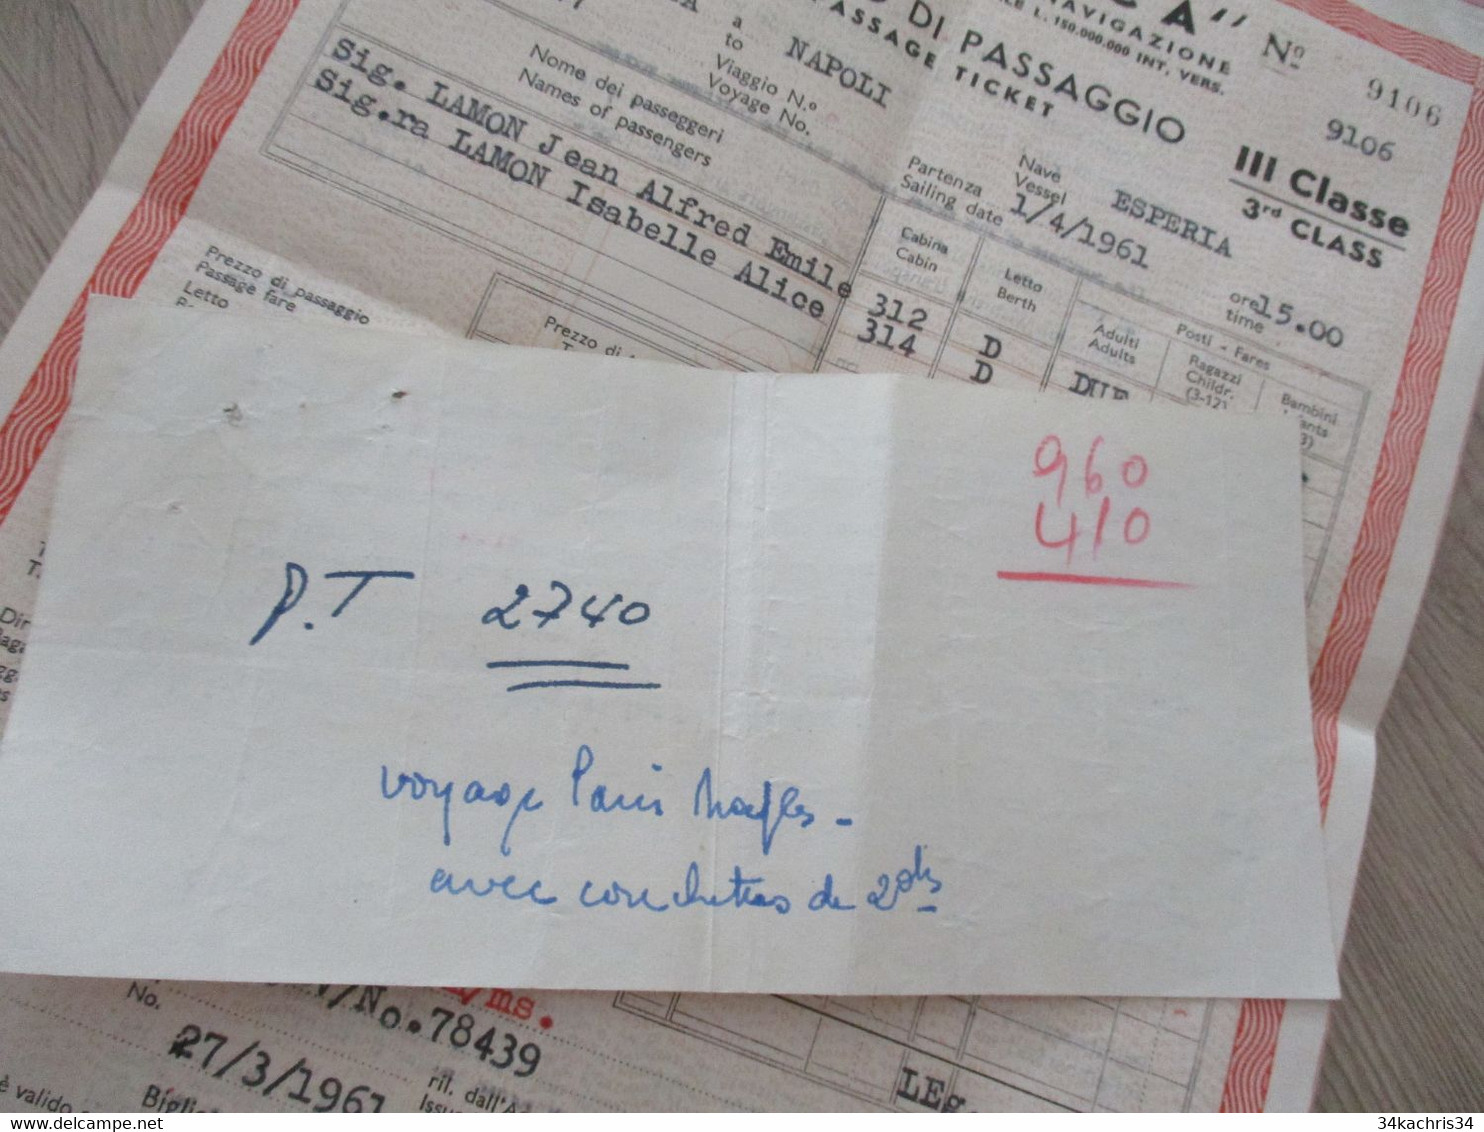 Billet De Passager Bibglietto Passaggio Adritica Italie 1961 1 TP Fiscal Egypte Napoli/Alessandria - Europa